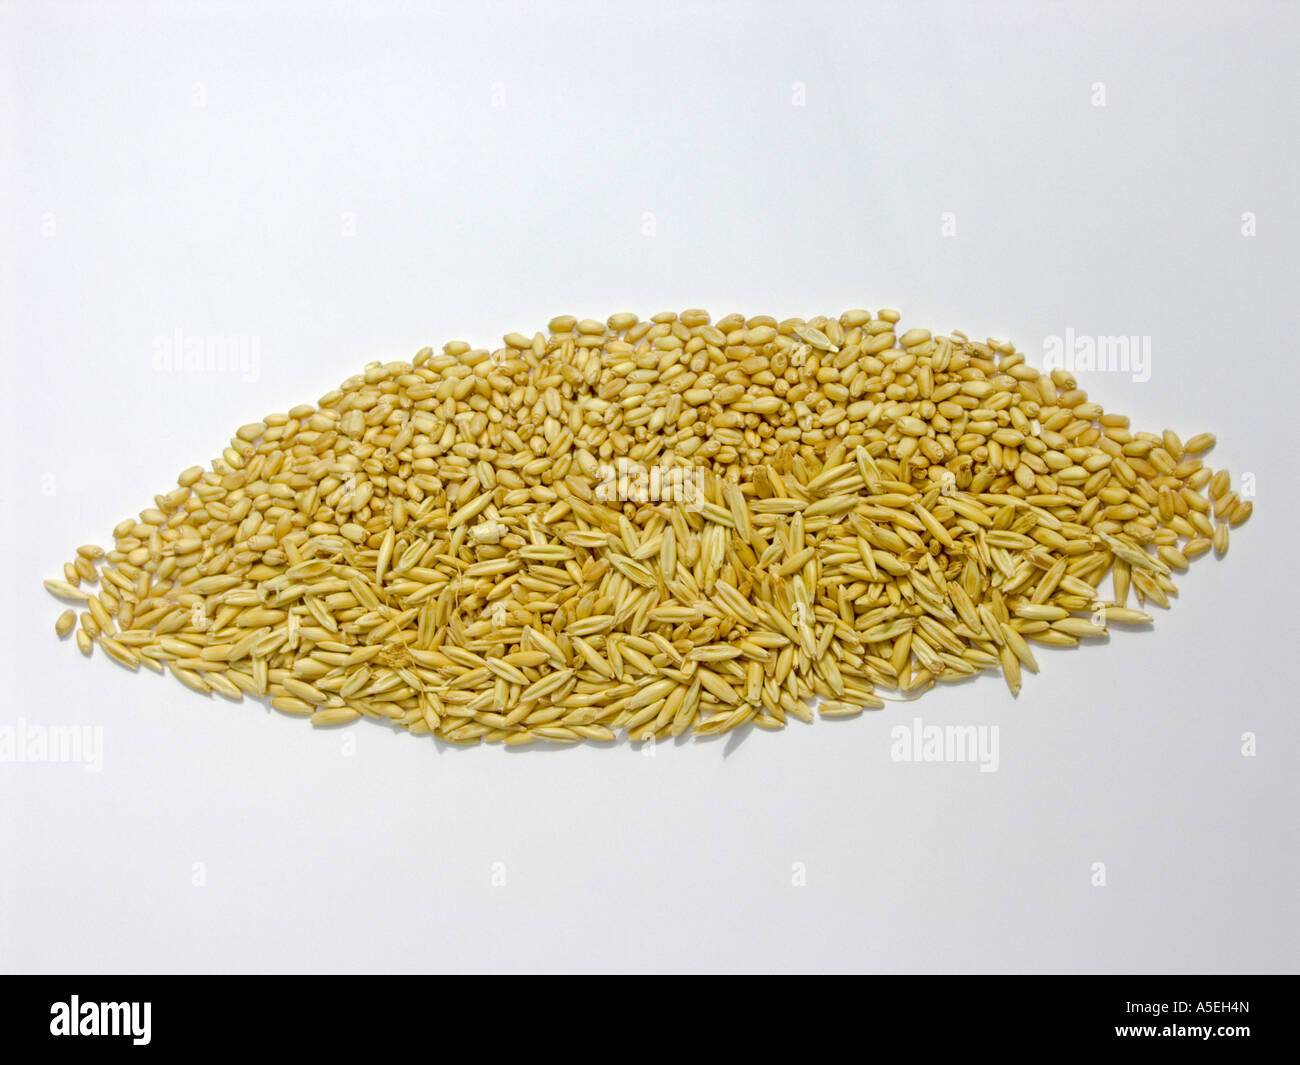 Sammlung von Getreide - Hafer und Weizen auf weißem Hintergrund Stockfoto